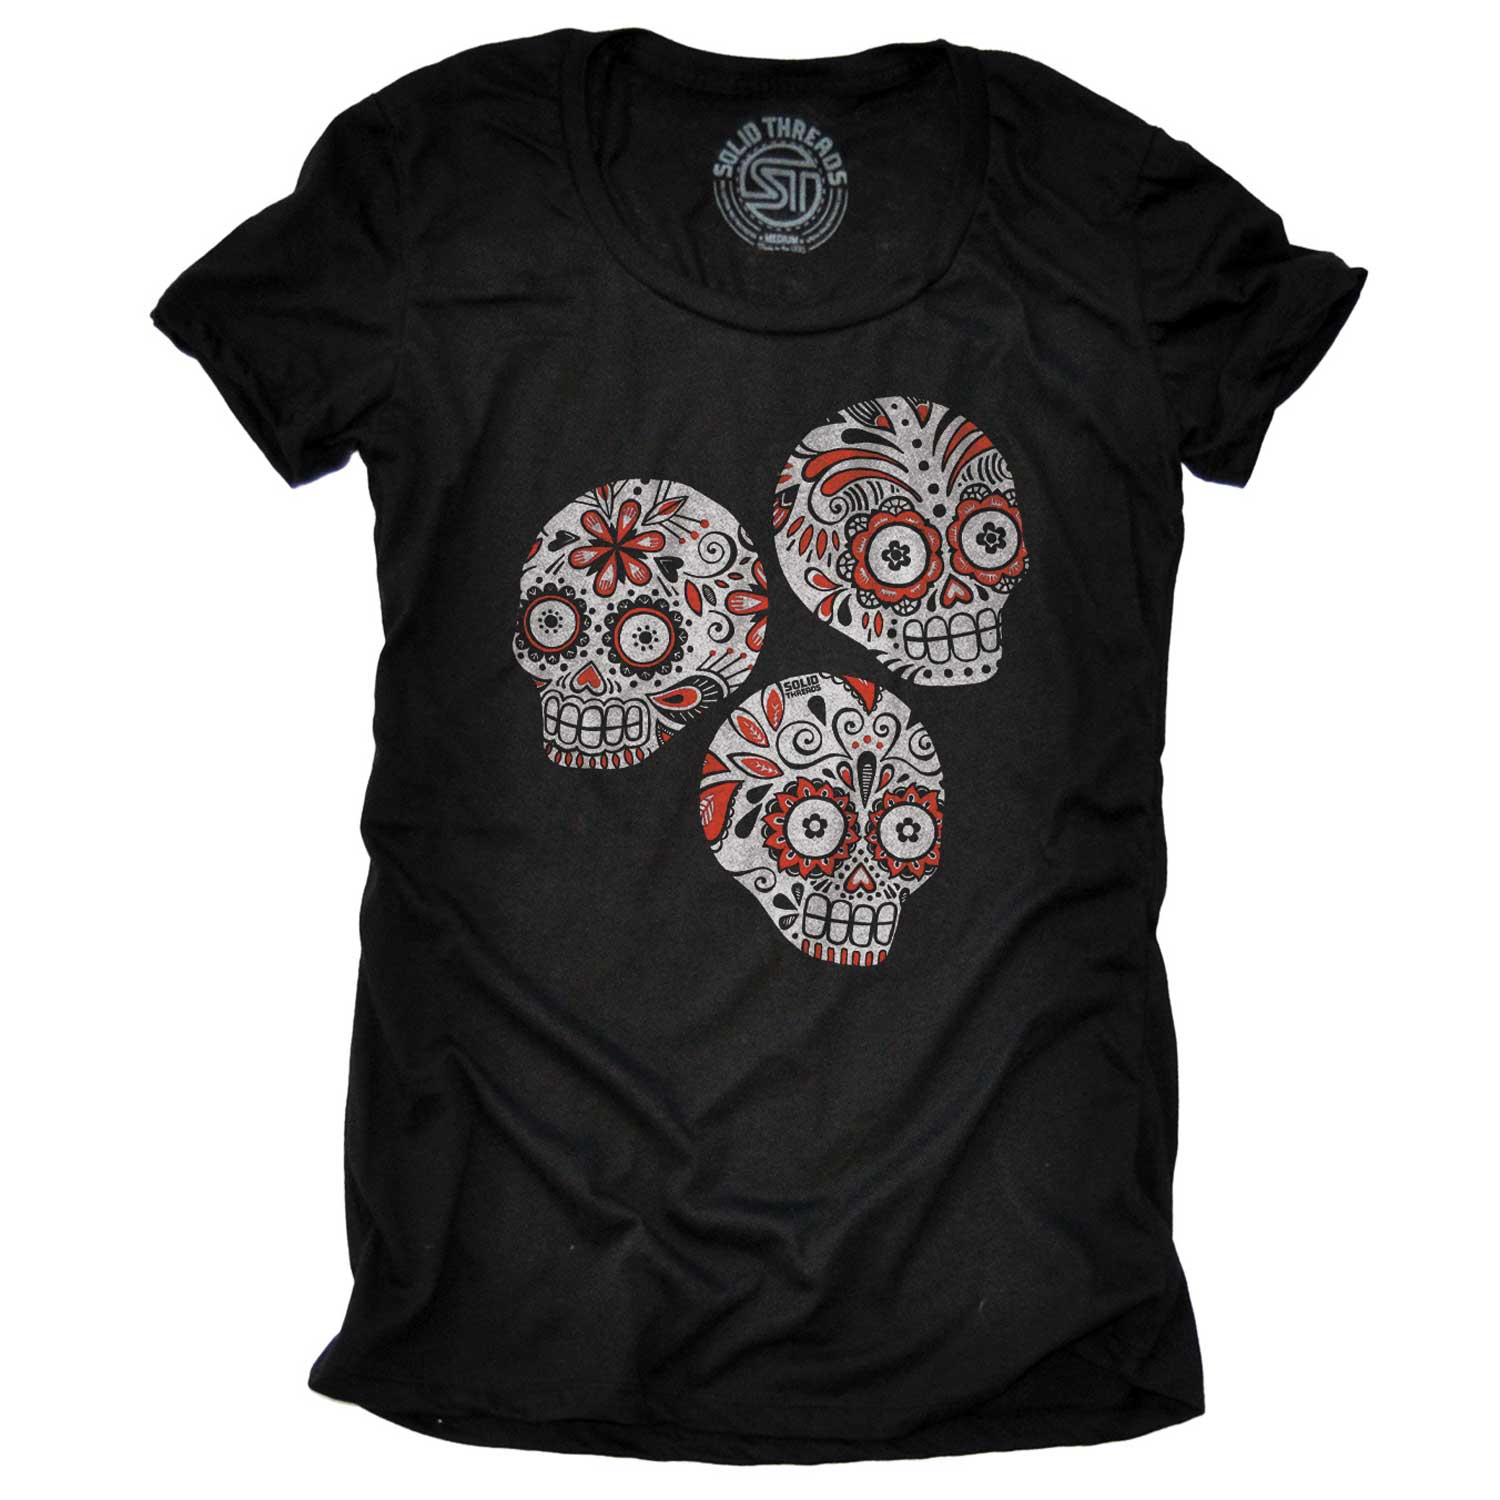 Women's Sugar Skulls Vintage Graphic Tee | Retro Día de los Muertos T-shirt | Solid Threads